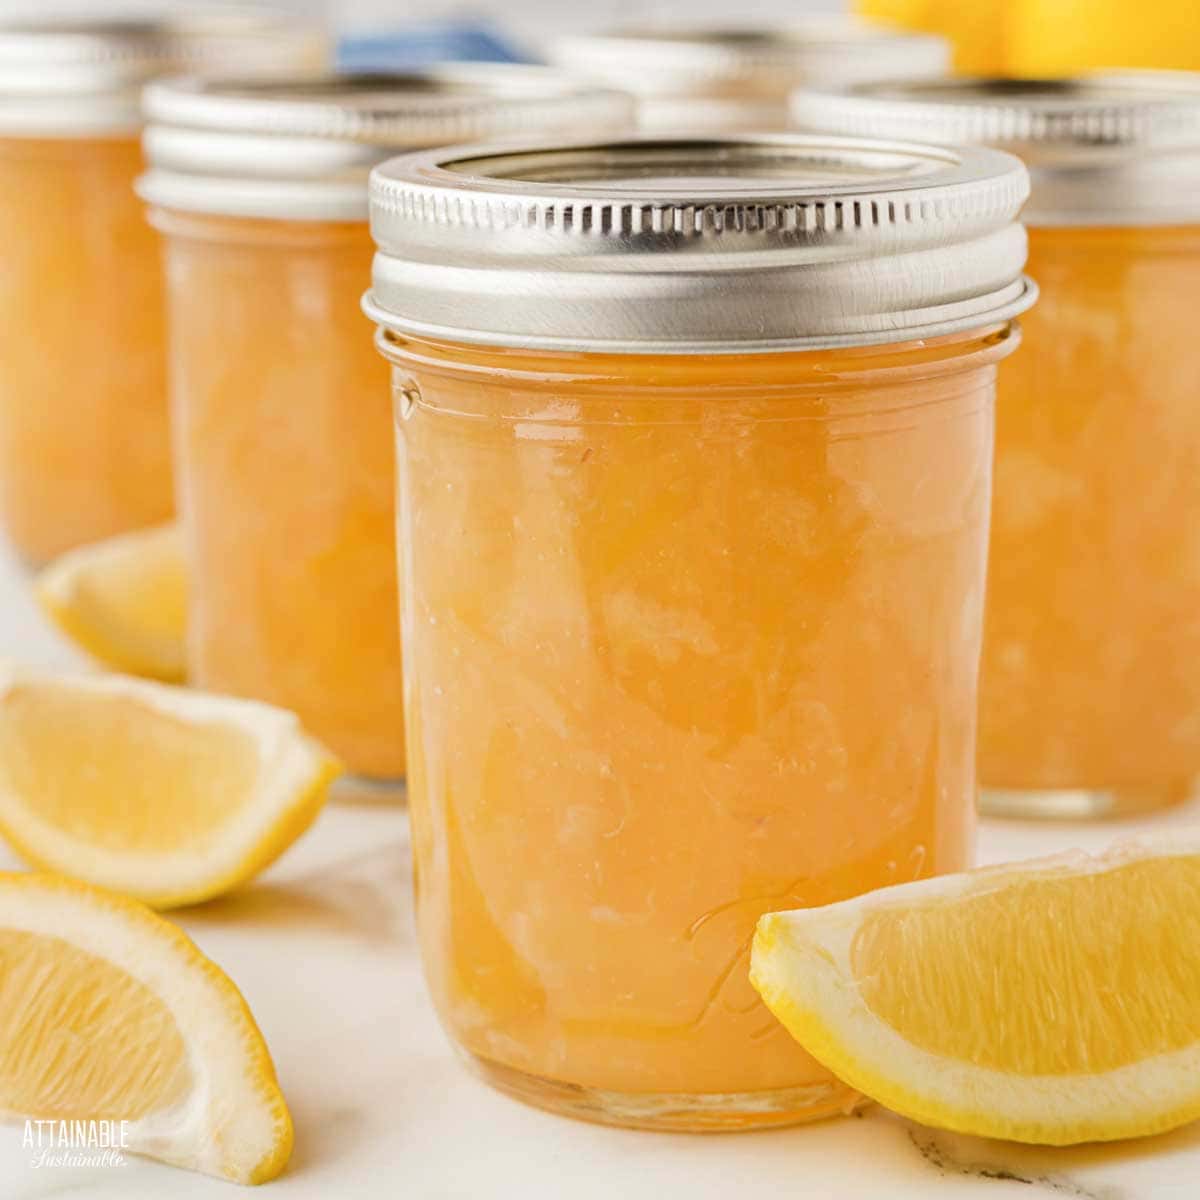 jars of home canned lemon marmalade.